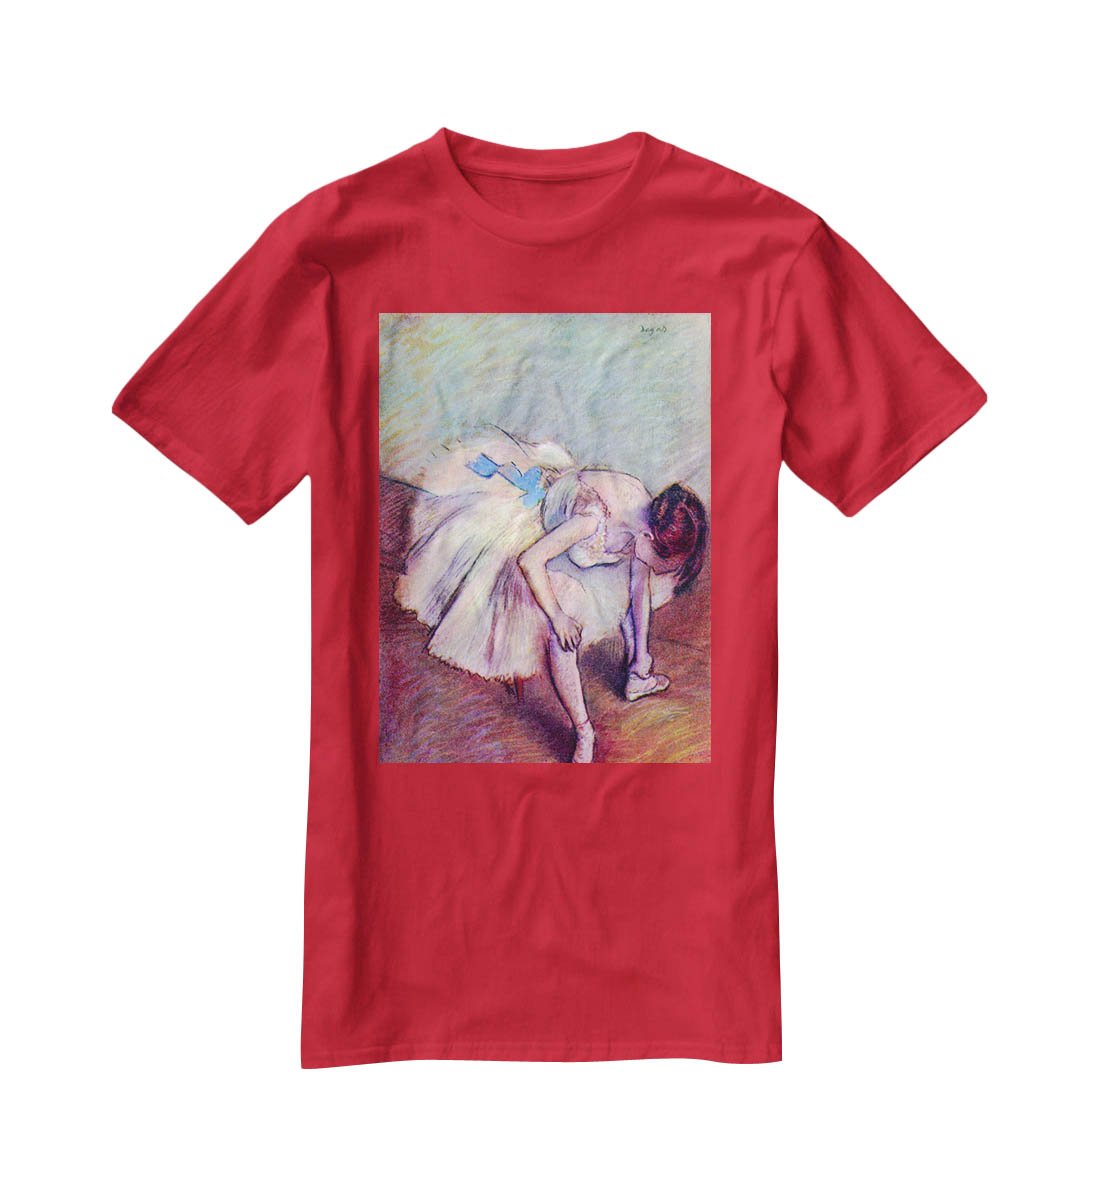 Dancer bent over by Degas T-Shirt - Canvas Art Rocks - 4